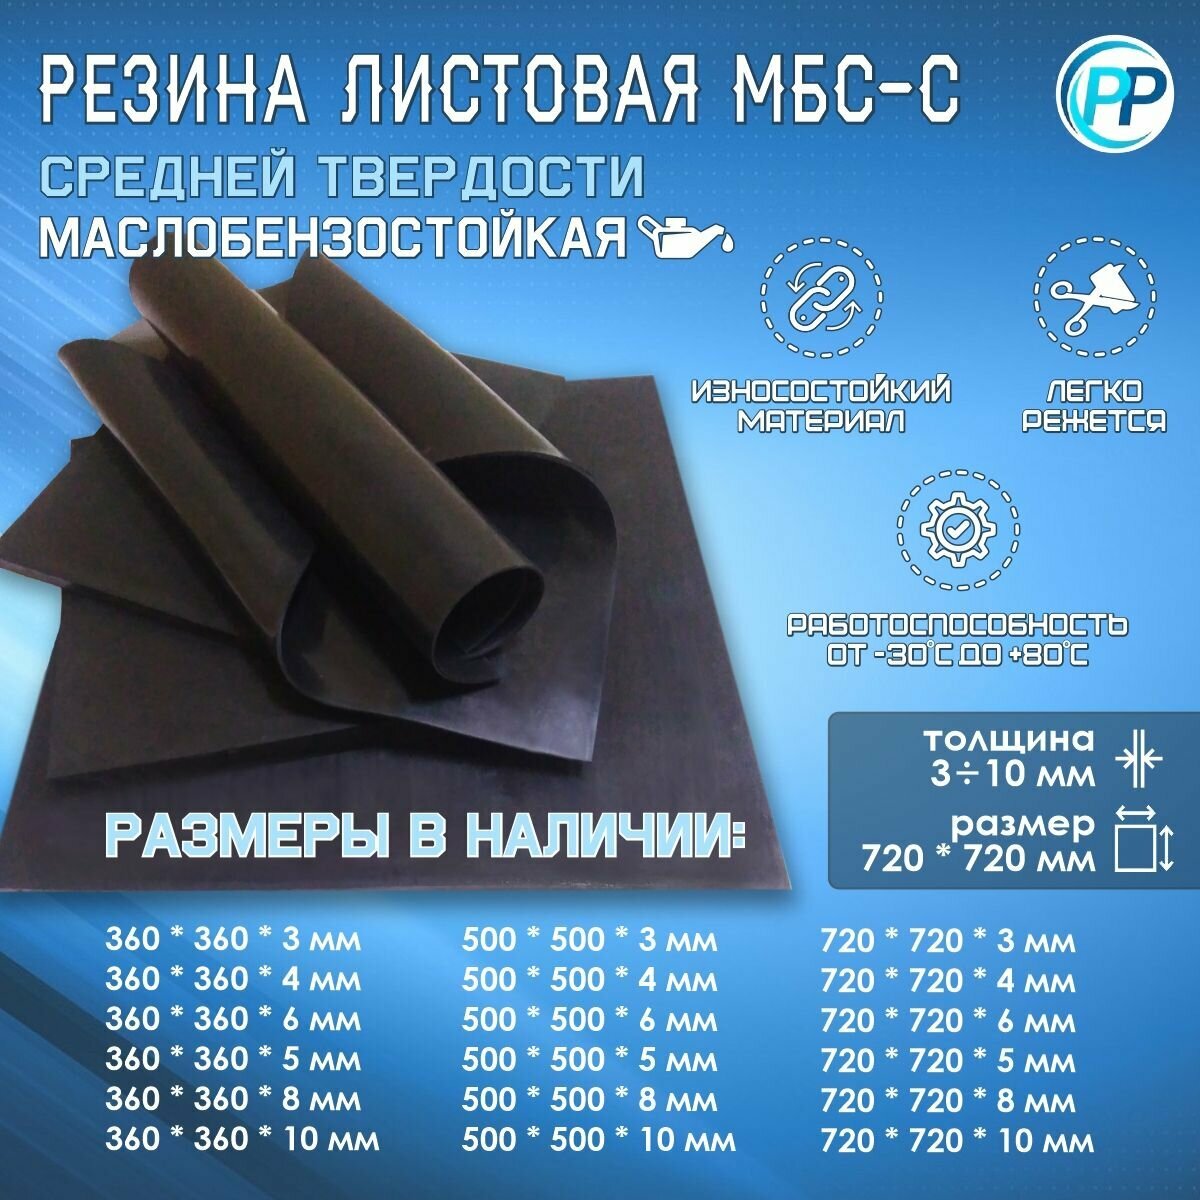 Резина листовая 2-ф 1 МБС (Маслобензостоикая) 5 мм 720х720 мм